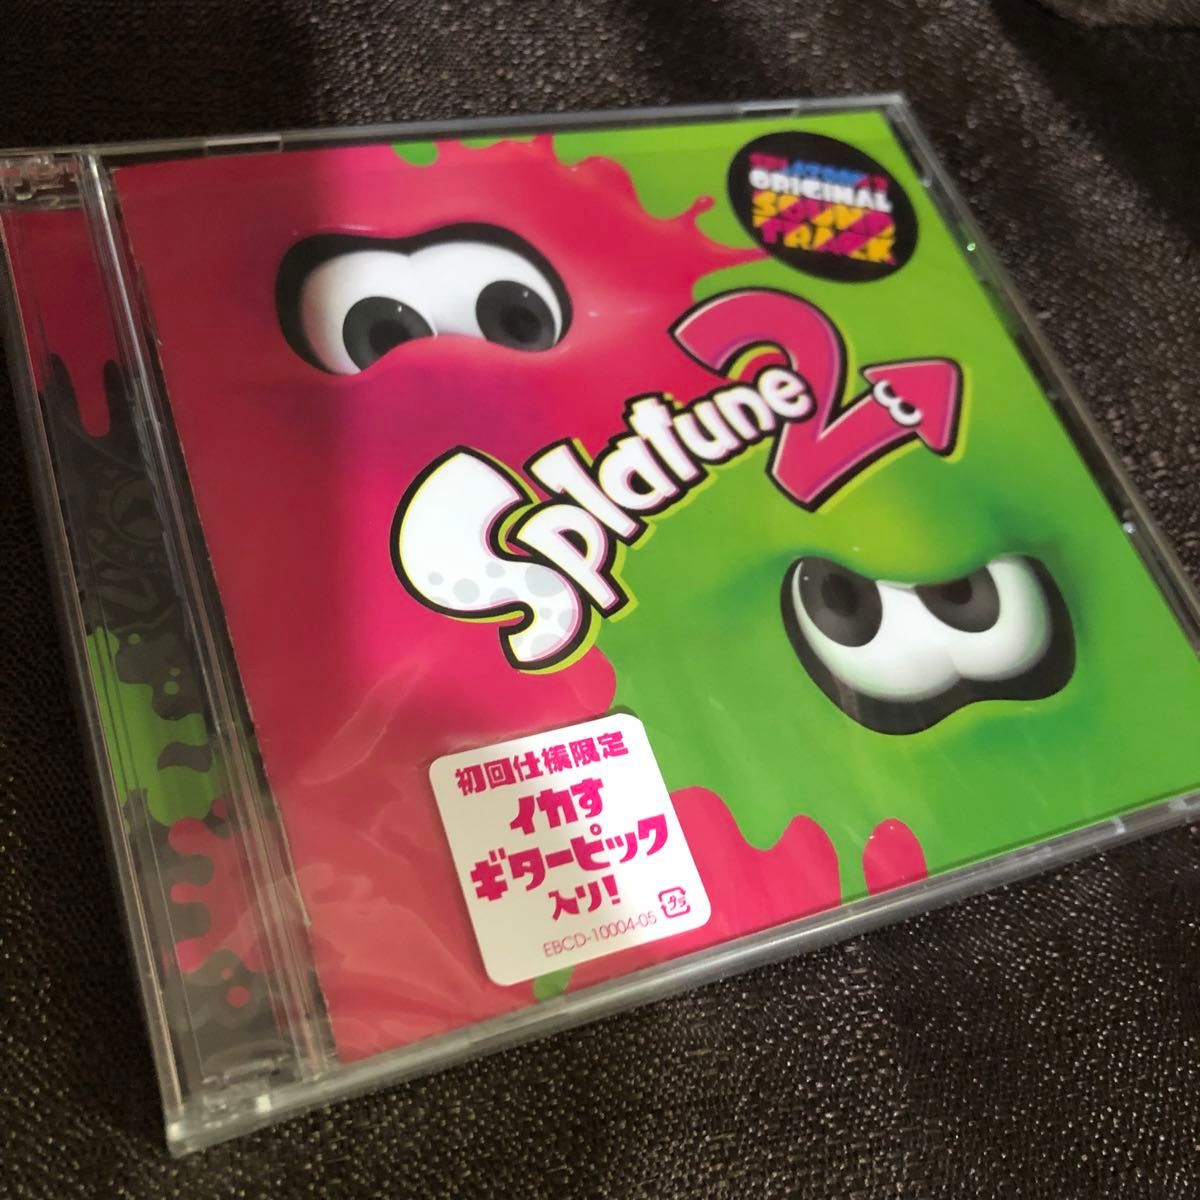 スプラトゥーン2 【初回限定生産版】オリジナルサウンドトラック Splatune2 OST ピック付き